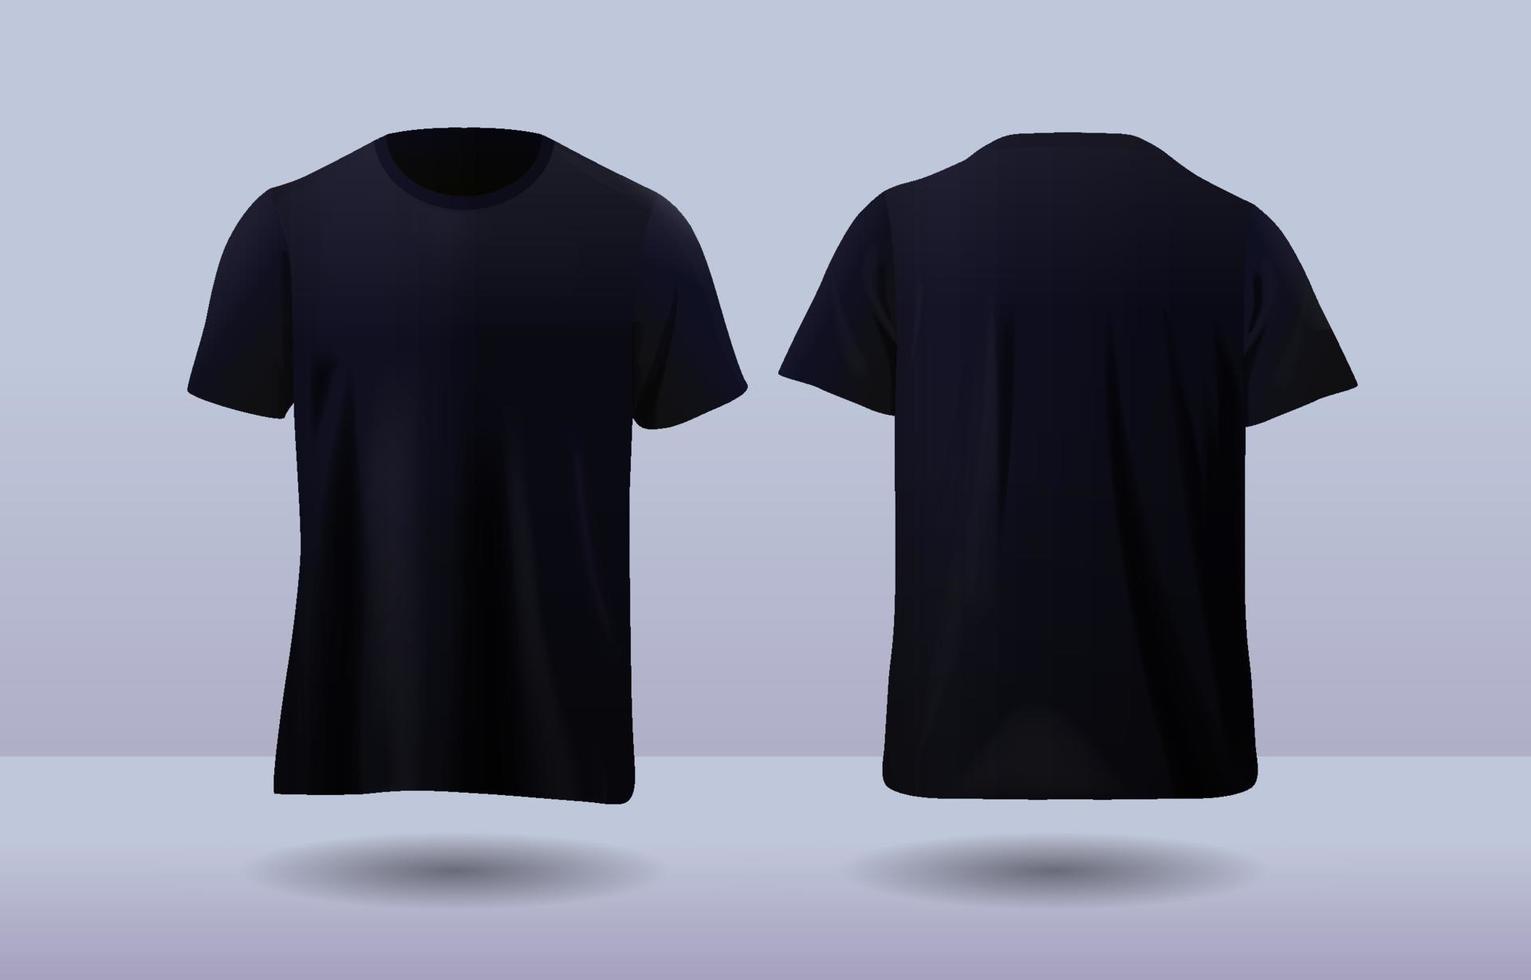 3D Black Tshirt Mockup 20453995 Vector Art at Vecteezy